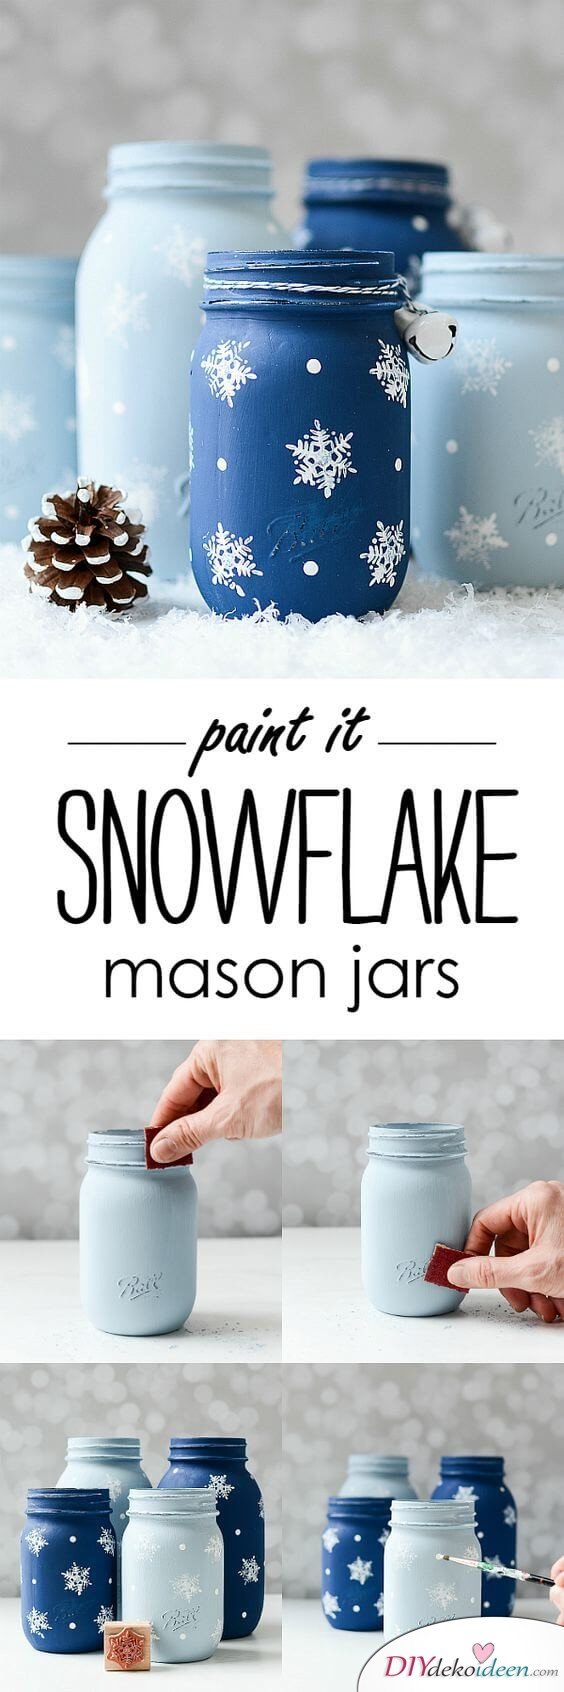 Winterdeko aus Einmachgläsern basteln - Schneeflocken aus Weckgläser malen